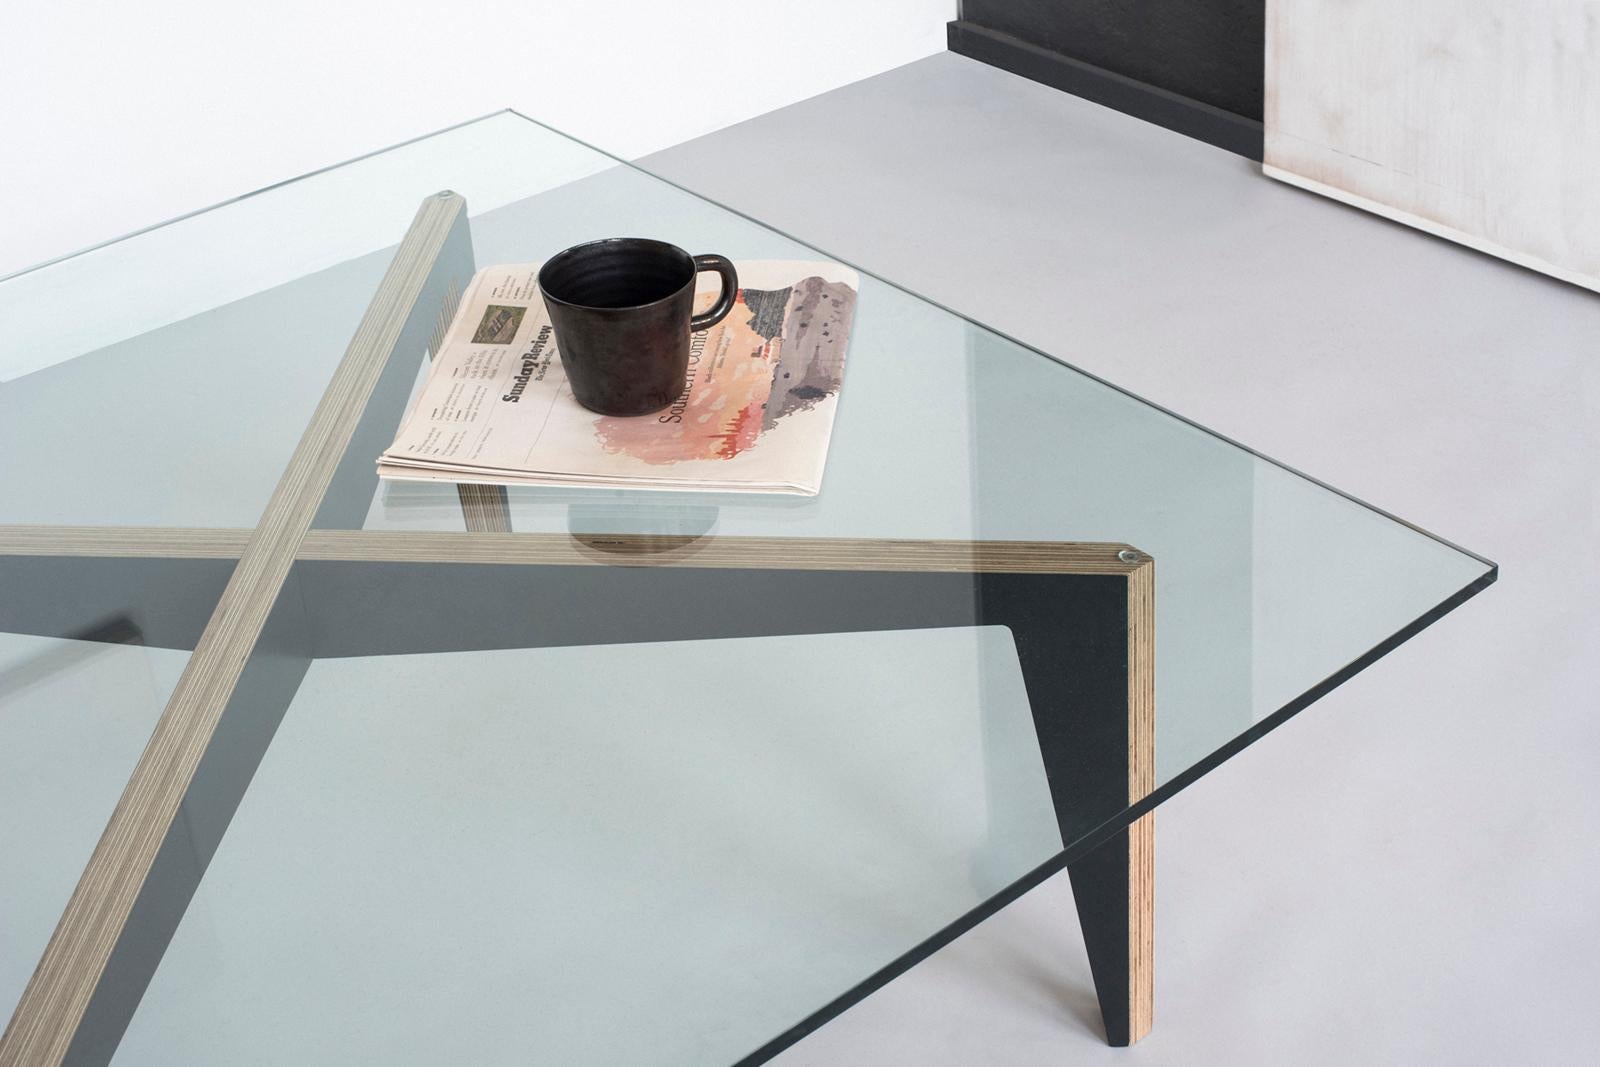 Cette table basse design minimaliste avec un plateau en verre est moderne et ludique. La précision de la menuiserie rend l'assemblage indolore tandis que la silhouette de la base en forme de croix capture la tension entre le mouvement et